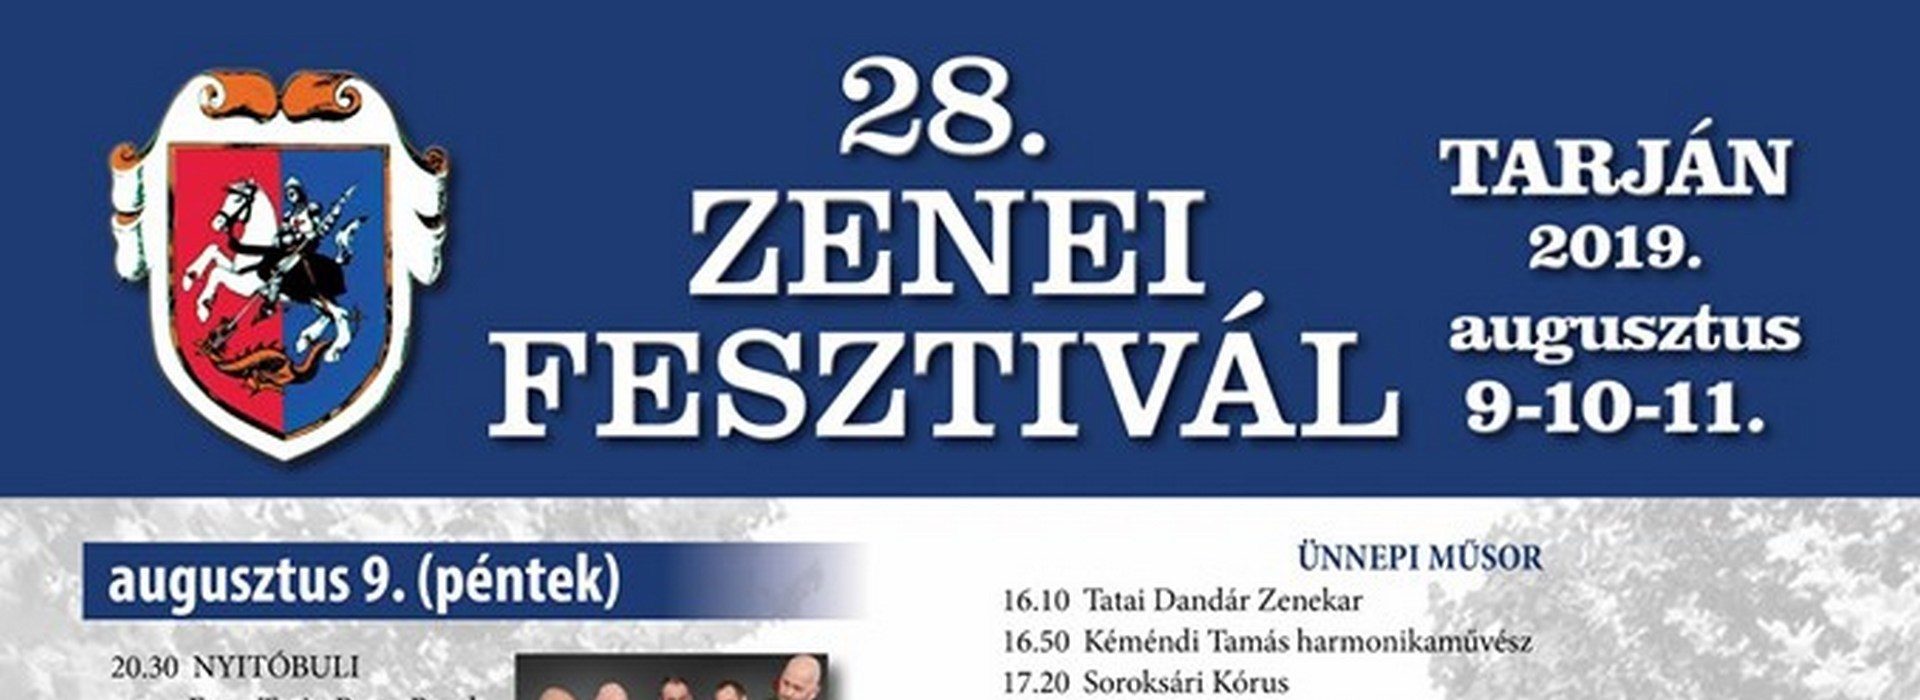 Tarjáni Zenei Fesztivál